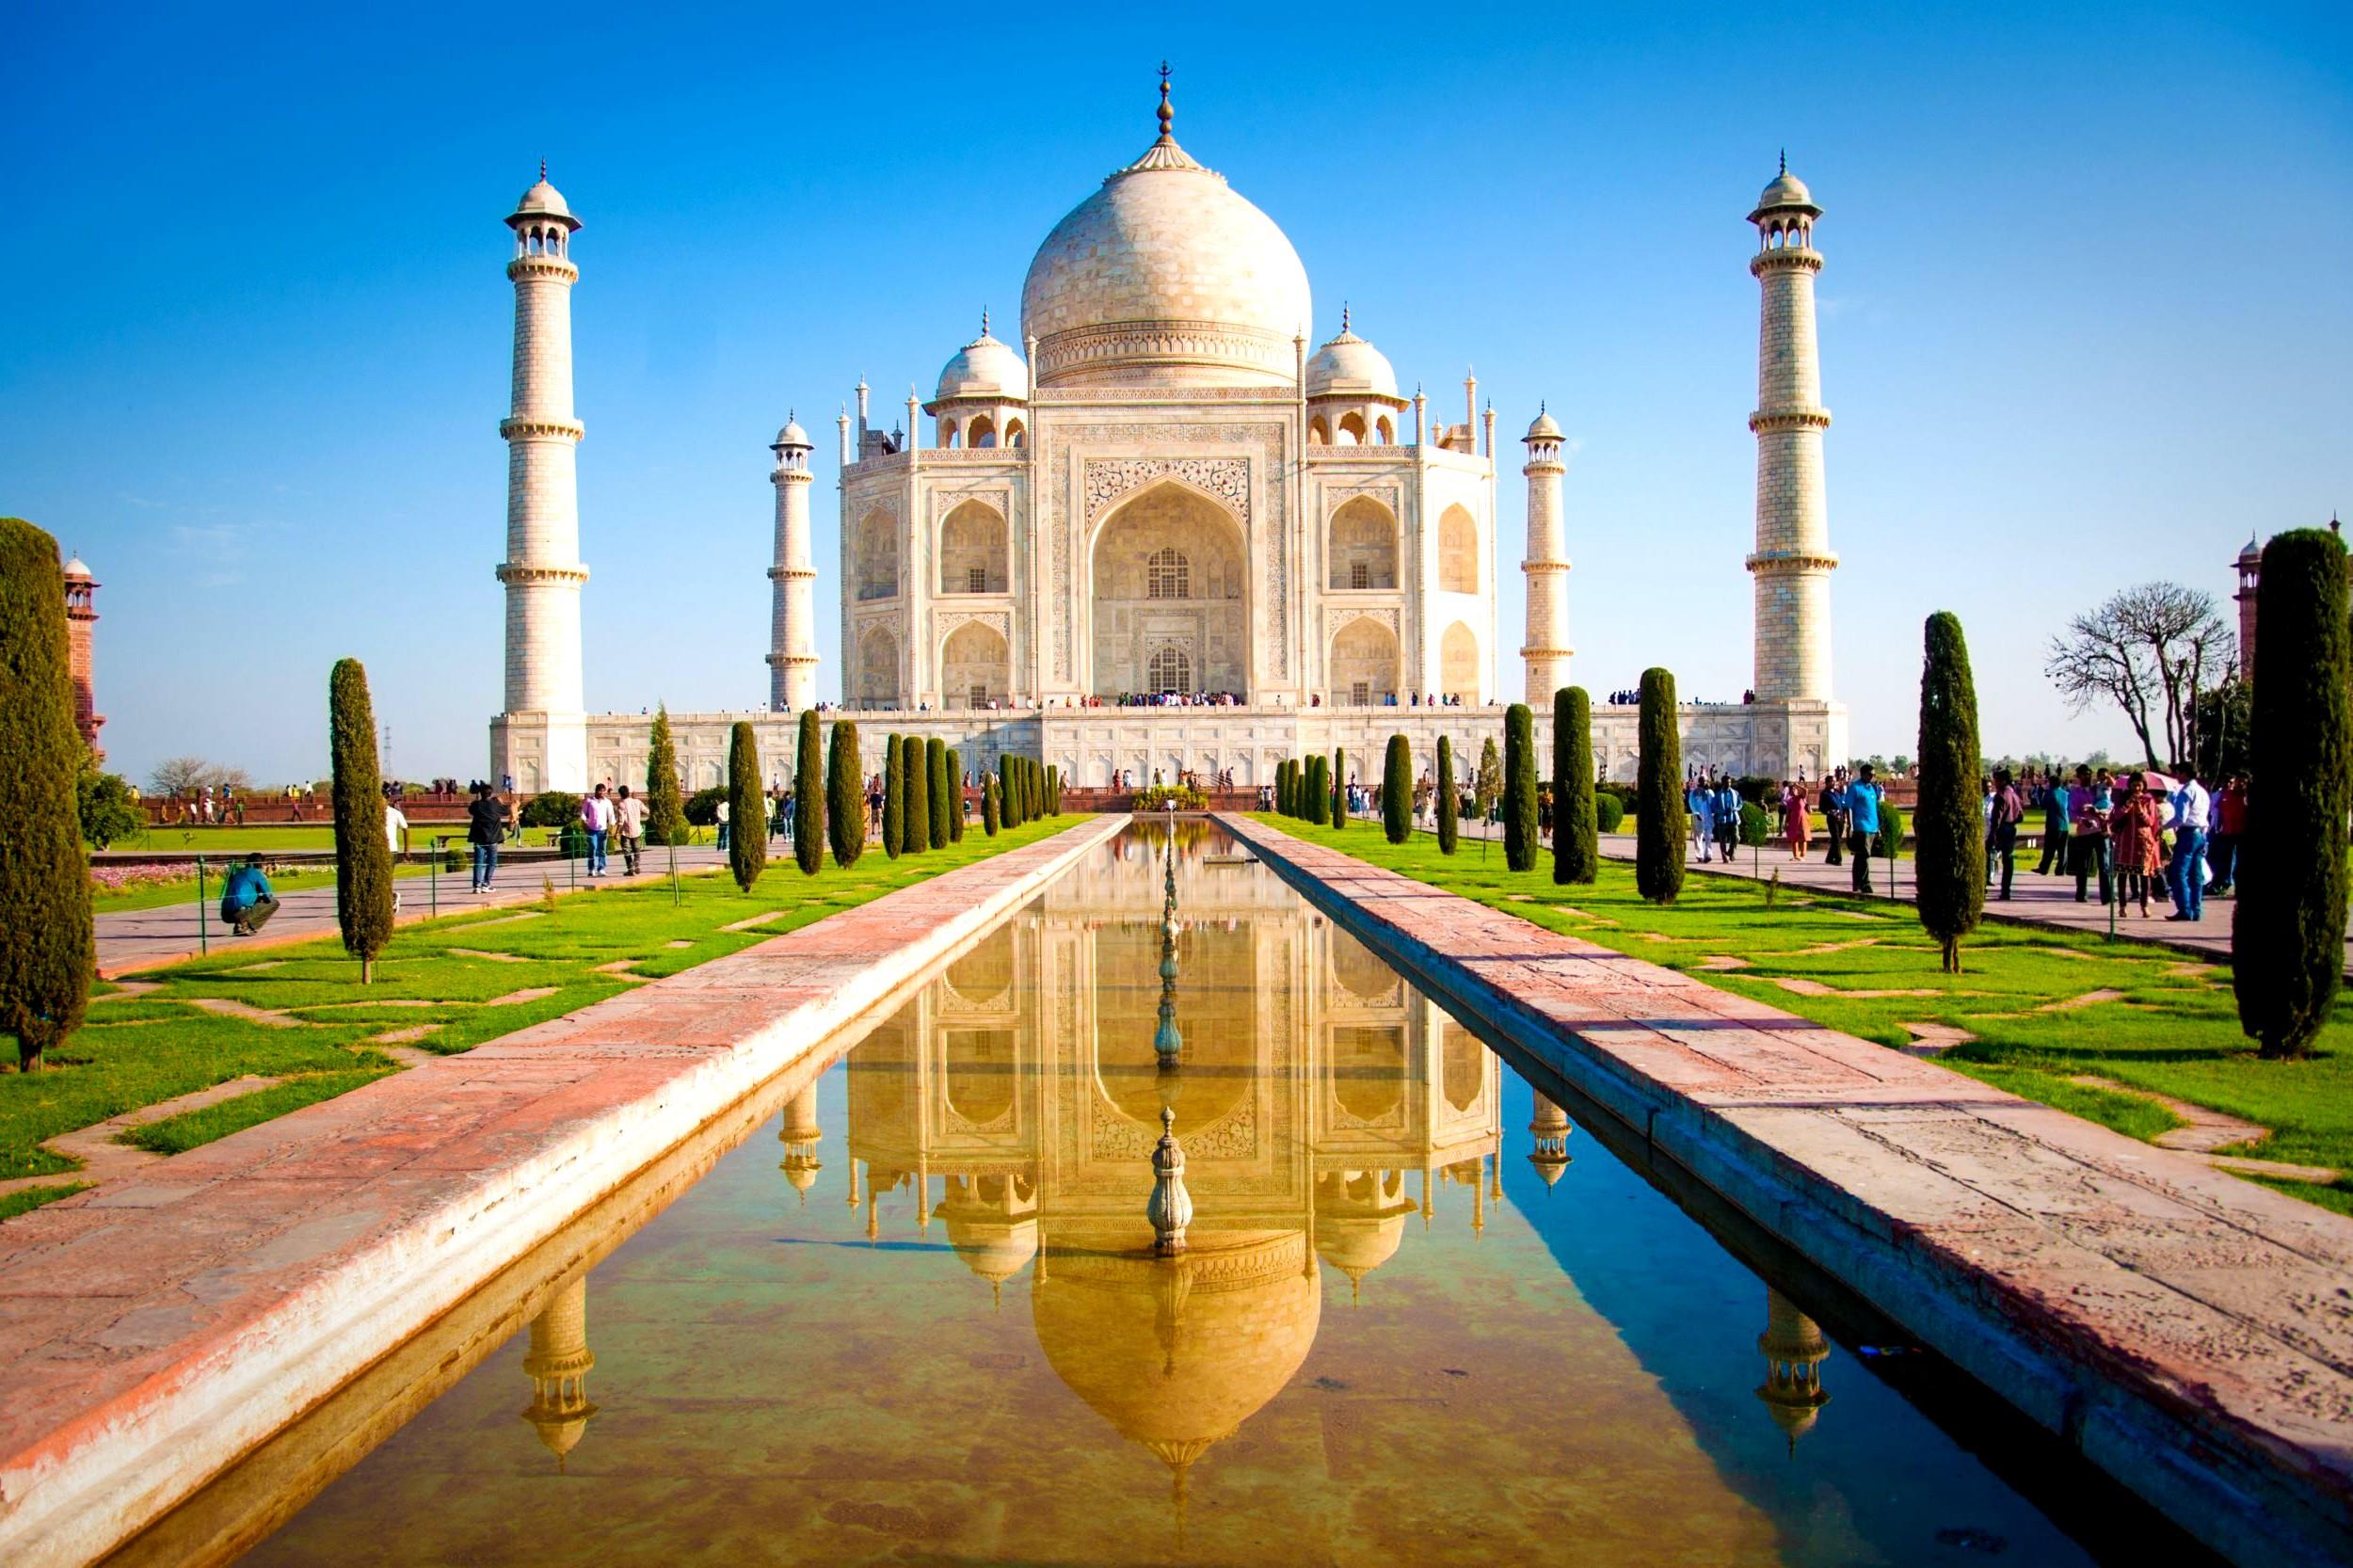 ताजमहल - प्यार की निशानी ताज महल का दीदार करने के लिए हर साल भारी संख्या में सैलानी आगरा पहुंचते हैं। दुनिया में शायद ही ऐसा कोई देश हो जहां लोग भारत के ताजमहल का जिक्र नहीं करते हों।